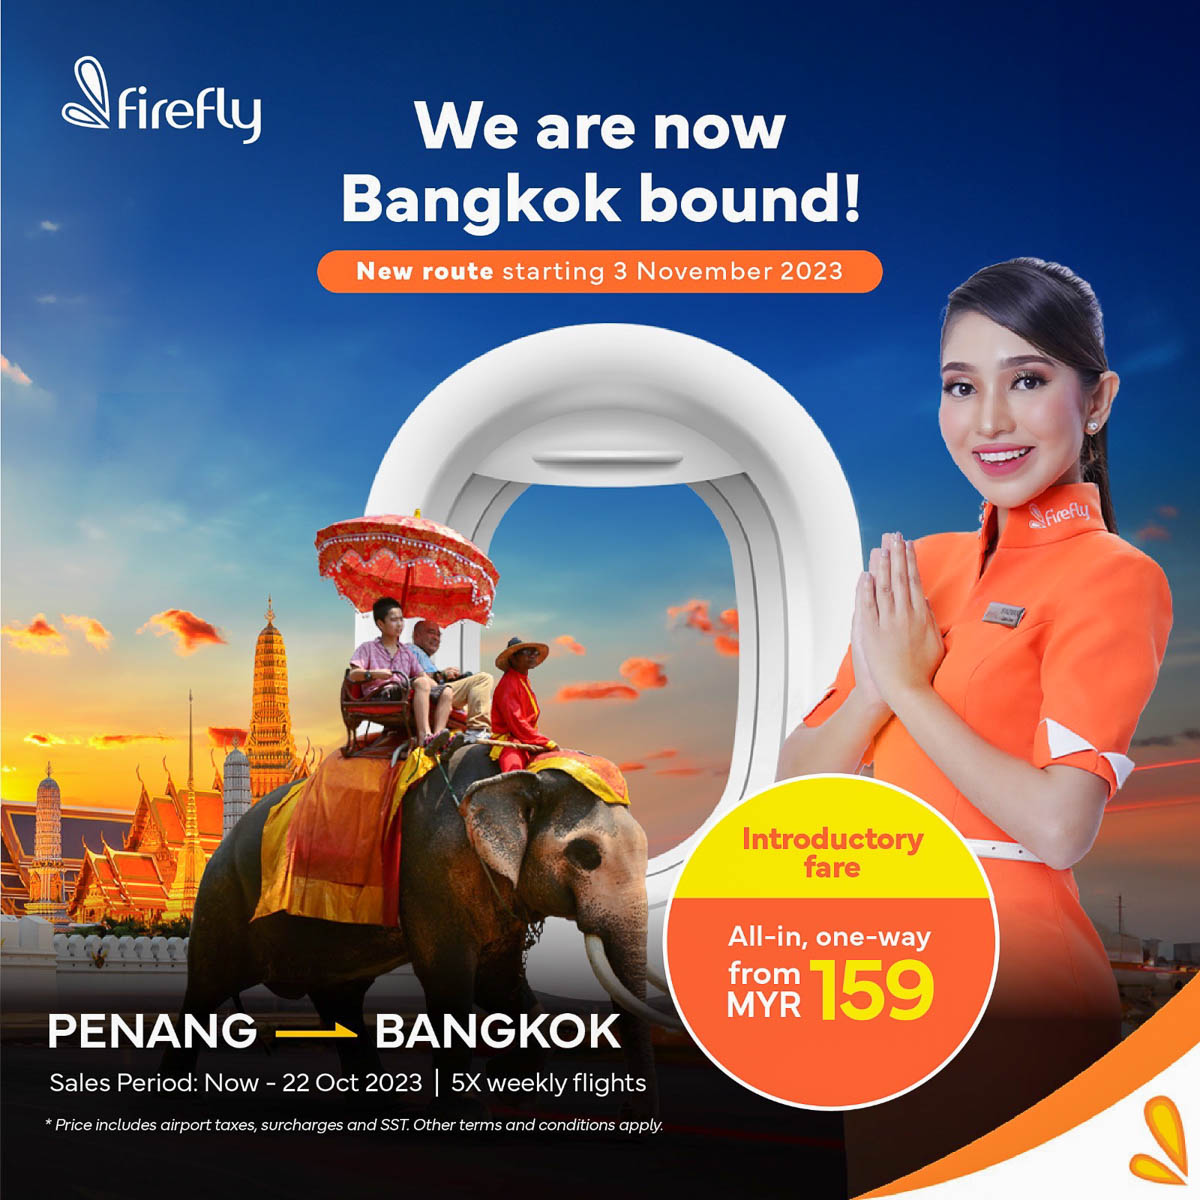 Penang - Bangkok flights